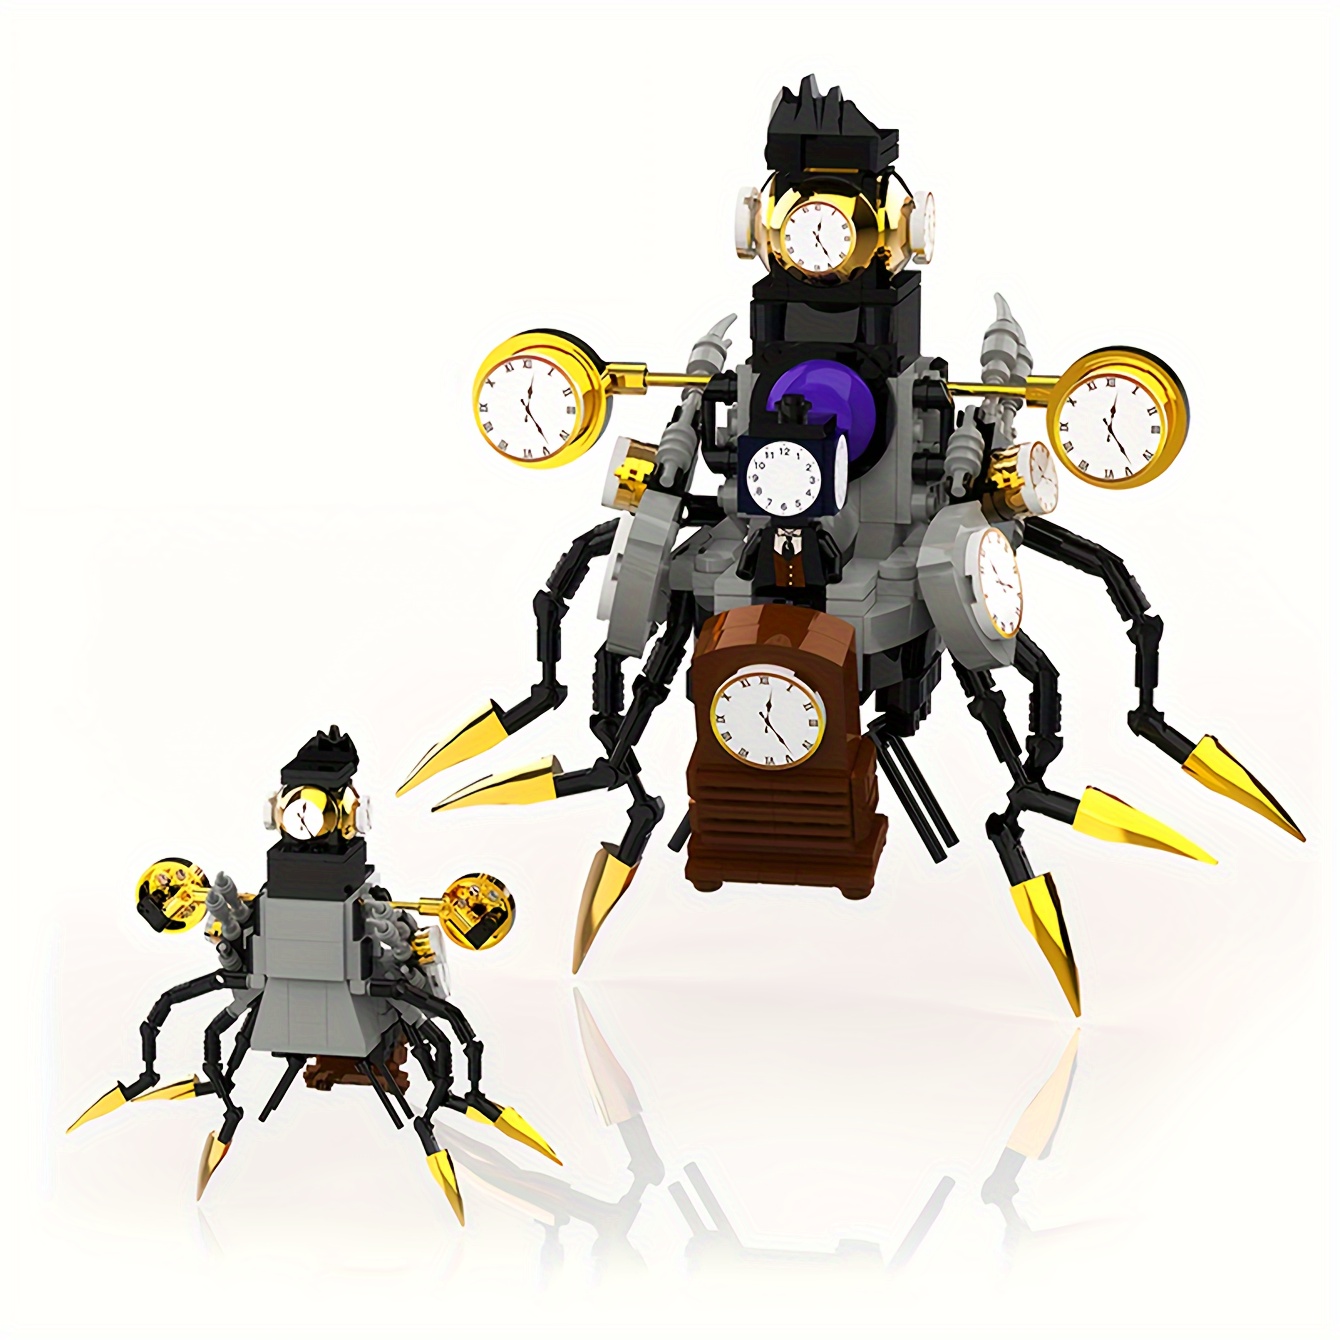 

406 Pcs Time Clockmaker Robot Building Set, Mecha Clock Building Toy Model, Fun Action Figure Toy